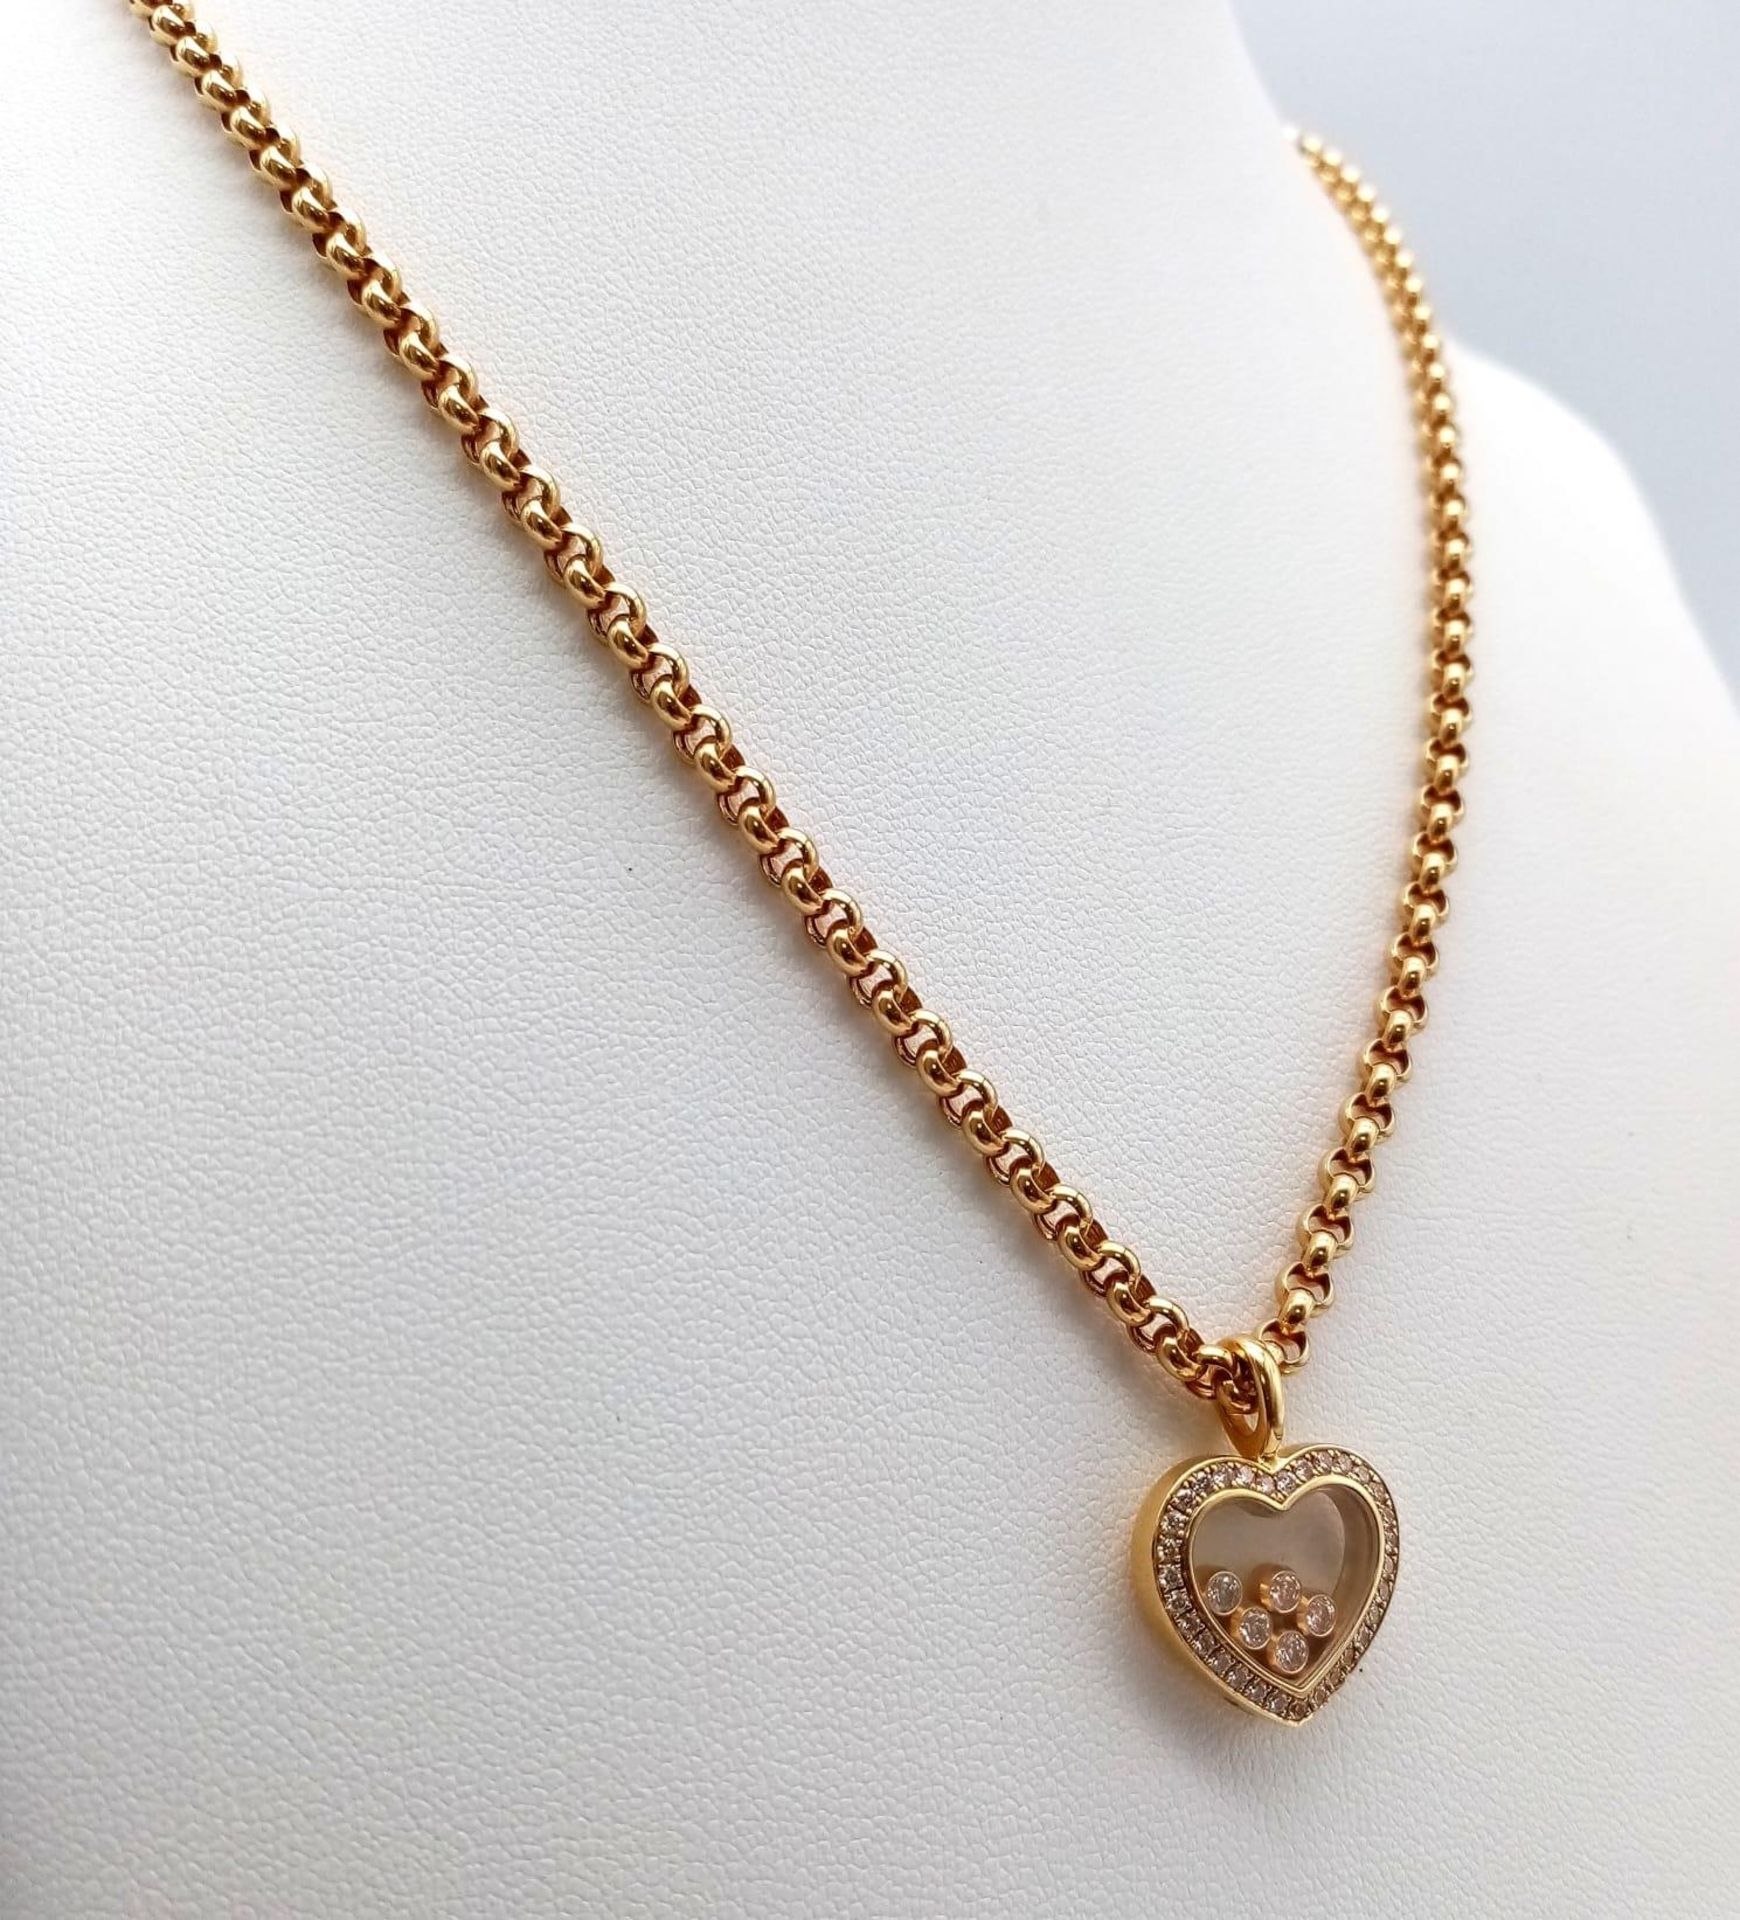 A Chopard 18K Yellow Gold and Floating Diamond Heart Pendant on an 18K Yellow Gold Belcher Link - Bild 3 aus 7